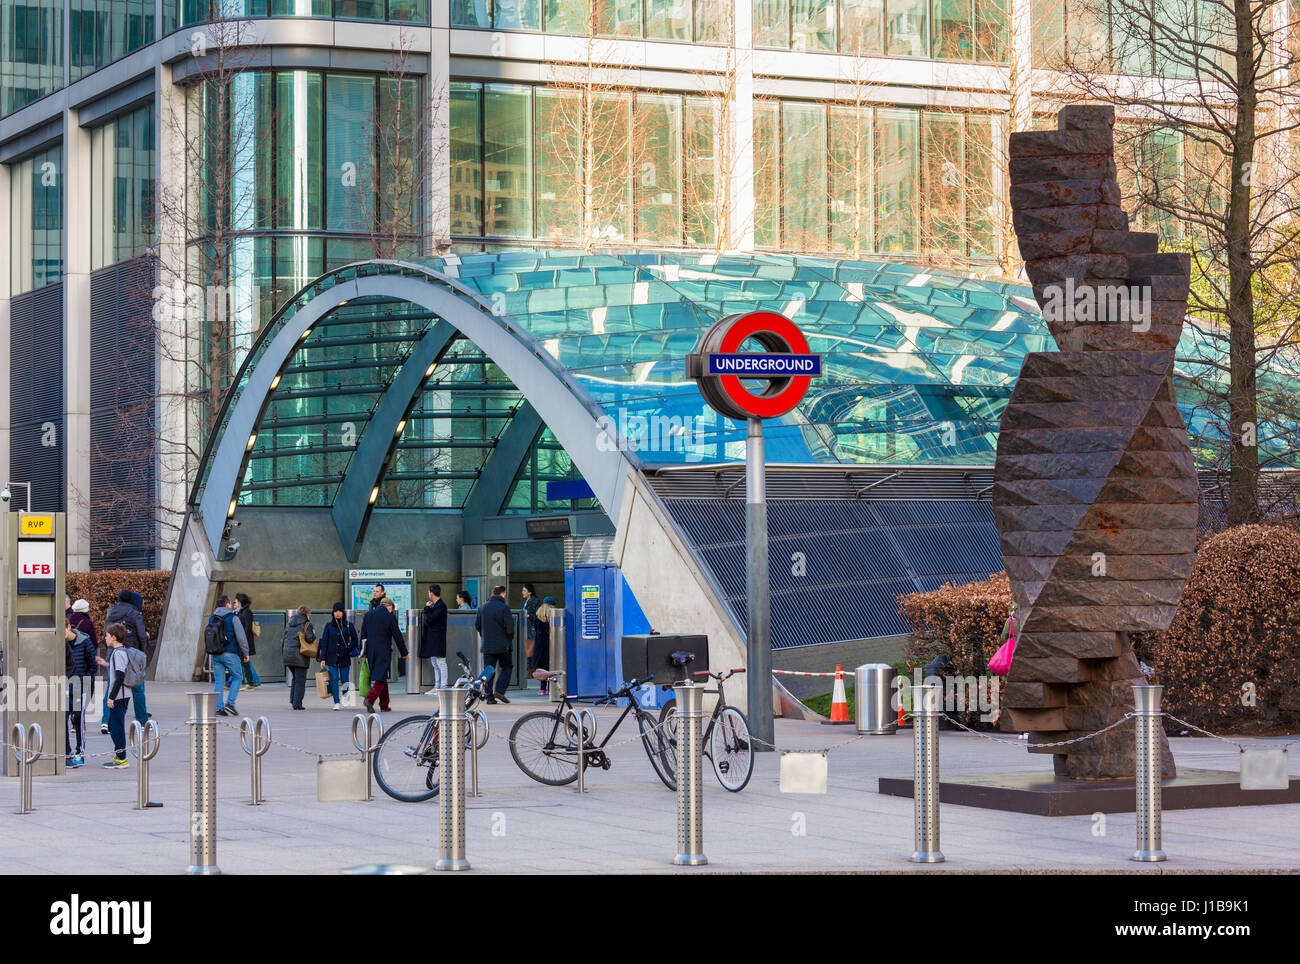 La station de métro de Canary Wharf, les Docklands, London, England, UK Banque D'Images